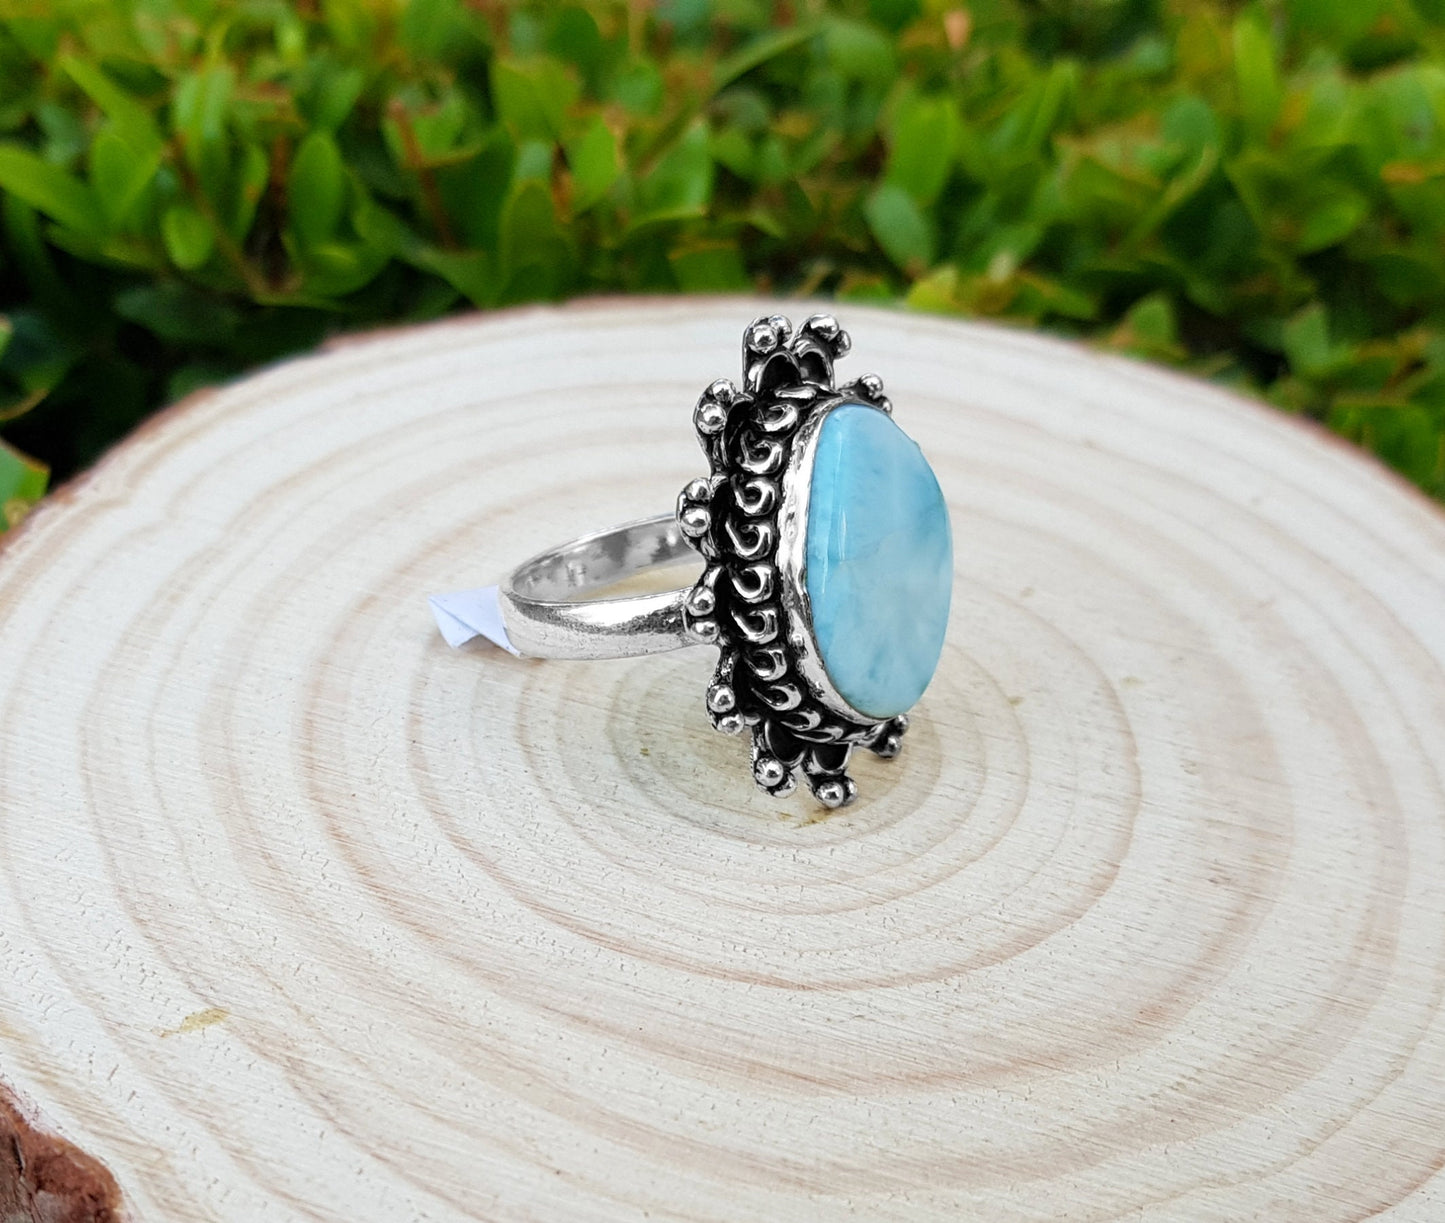 Larimar Statement Ring Size US 7 1/2 Sterling Silver Boho Rings Genuine Grade A Blue Larimar Ring Gemstone Ring